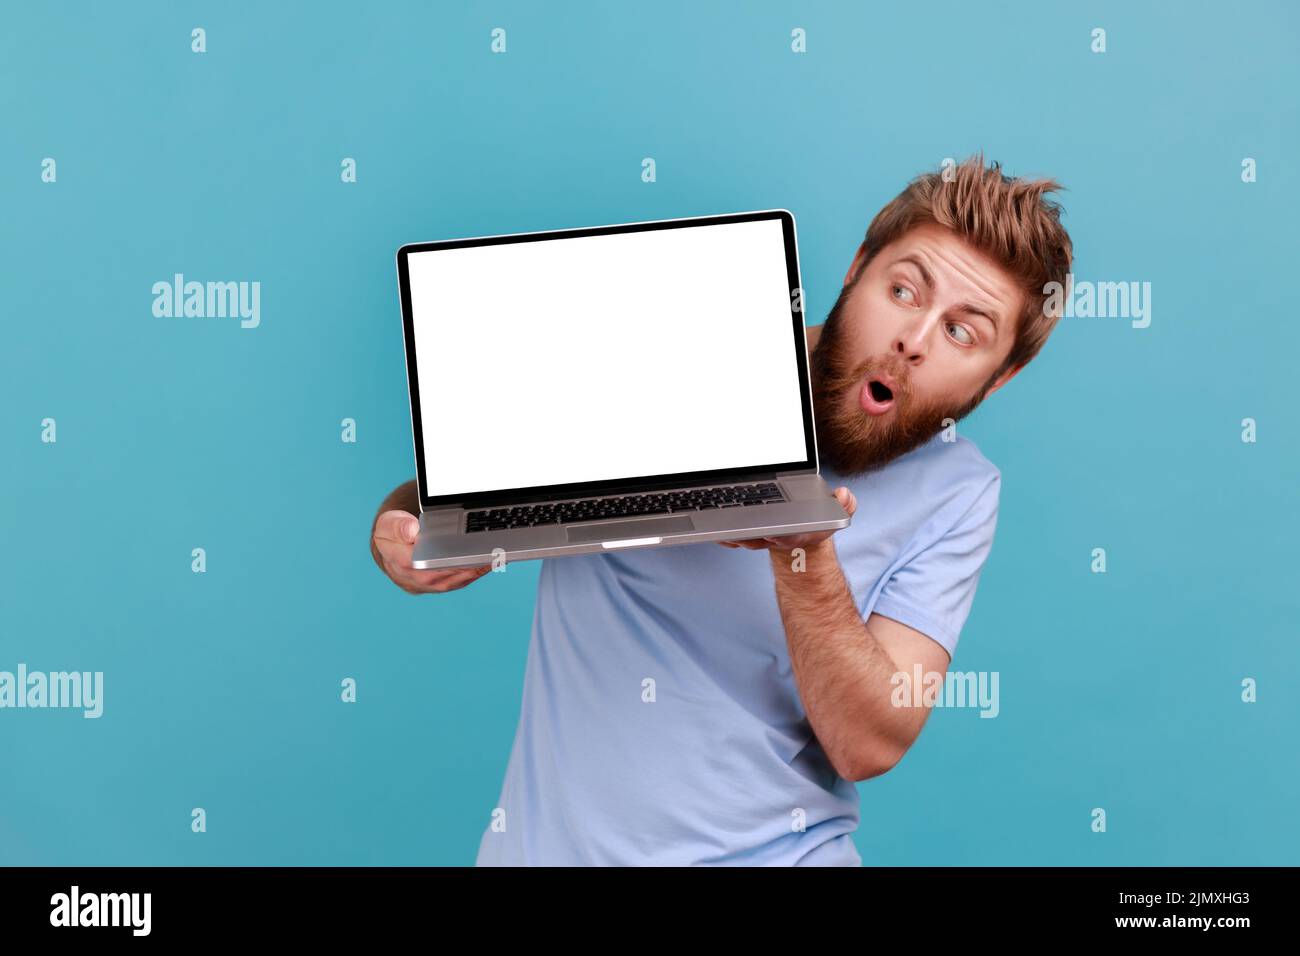 Retrato de un hombre barbudo sosteniendo un portátil con pantalla blanca en blanco y mirando la pantalla desde el lado con una expresión facial impactante, diciendo wow. Estudio de interior aislado sobre fondo azul. Foto de stock